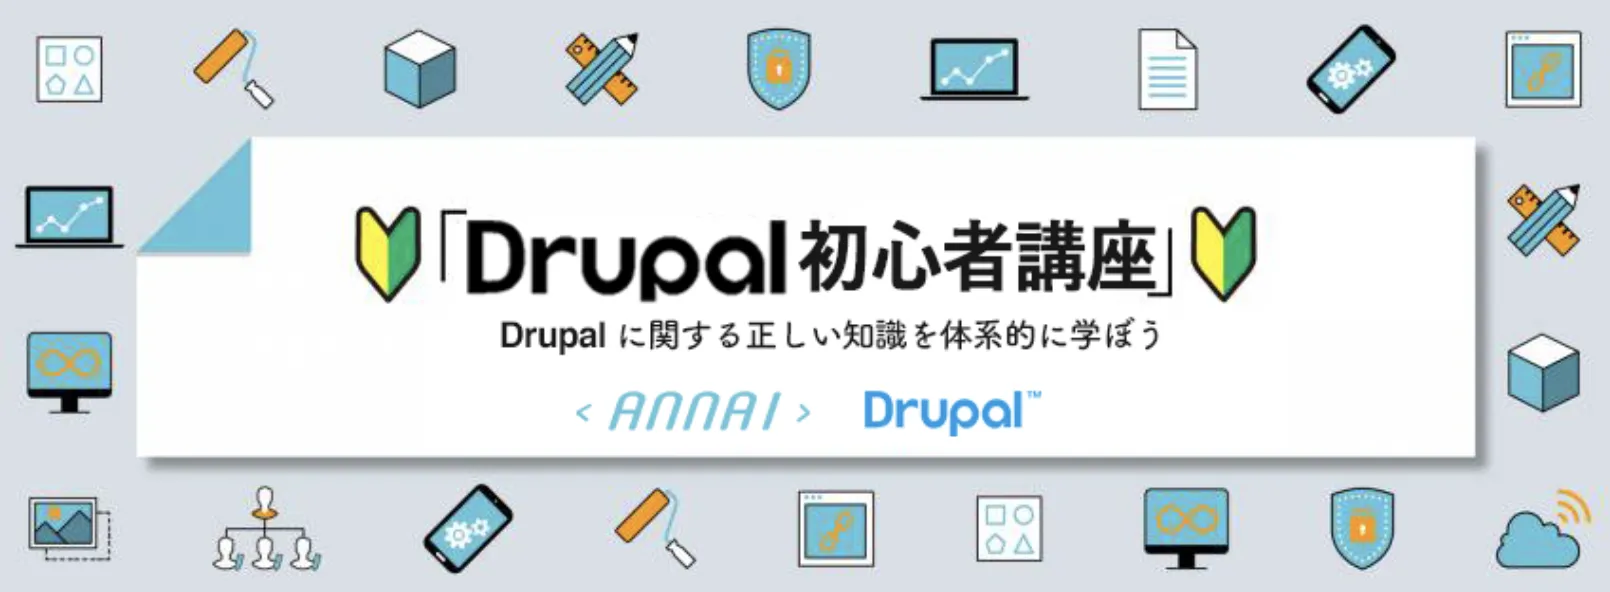 第 15 回 Drupal の拡張モジュールの選定と使い方